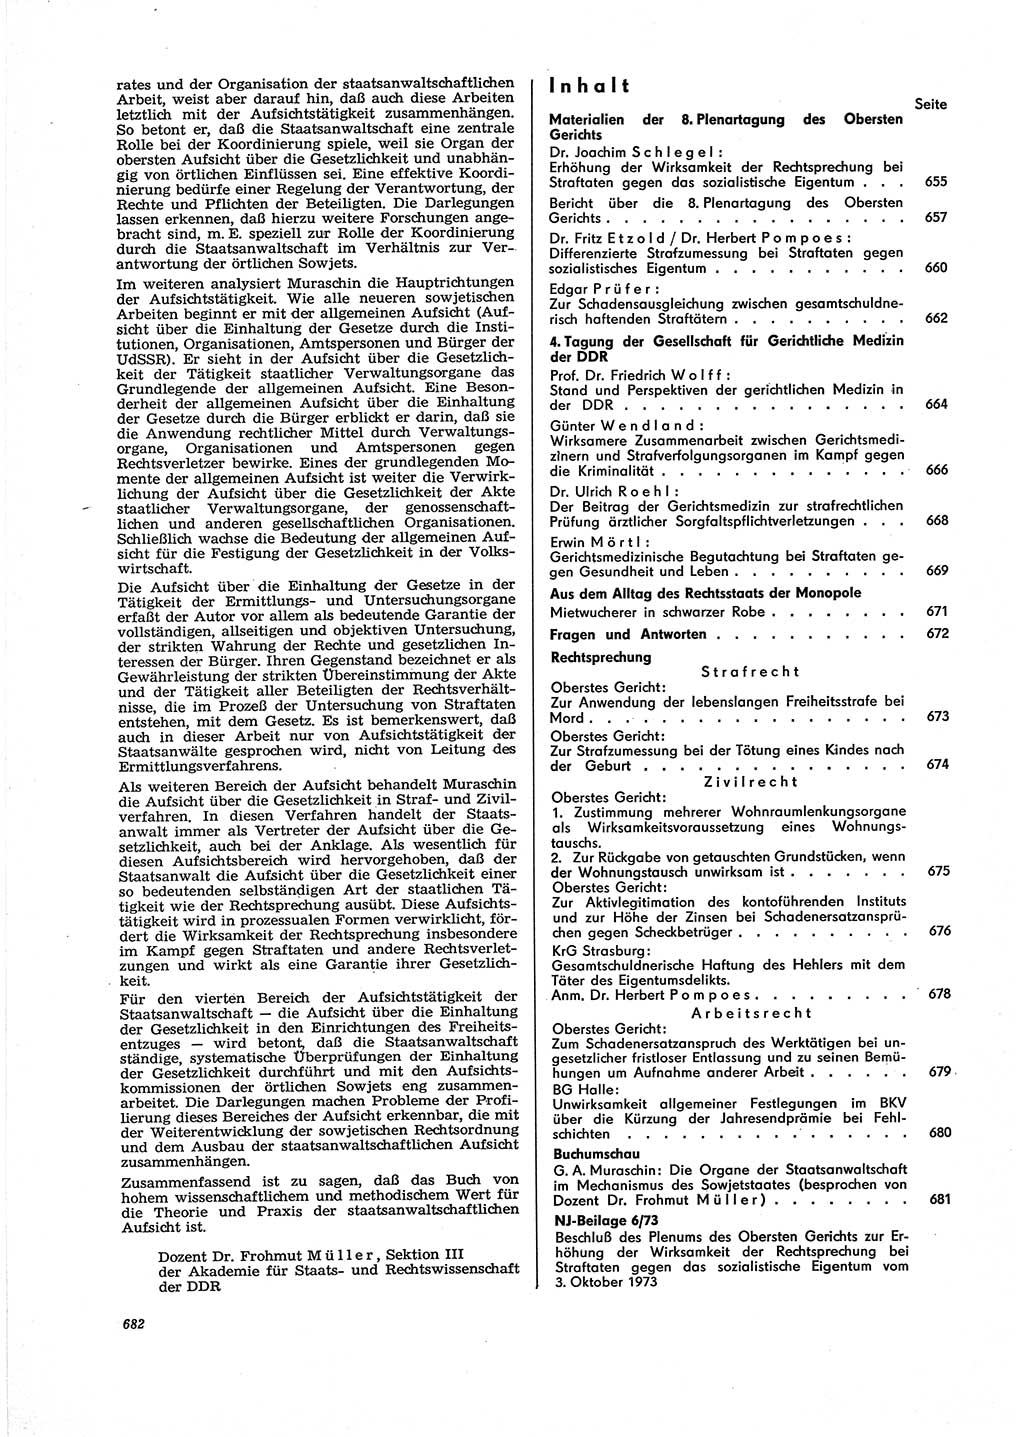 Neue Justiz (NJ), Zeitschrift für Recht und Rechtswissenschaft [Deutsche Demokratische Republik (DDR)], 27. Jahrgang 1973, Seite 682 (NJ DDR 1973, S. 682)